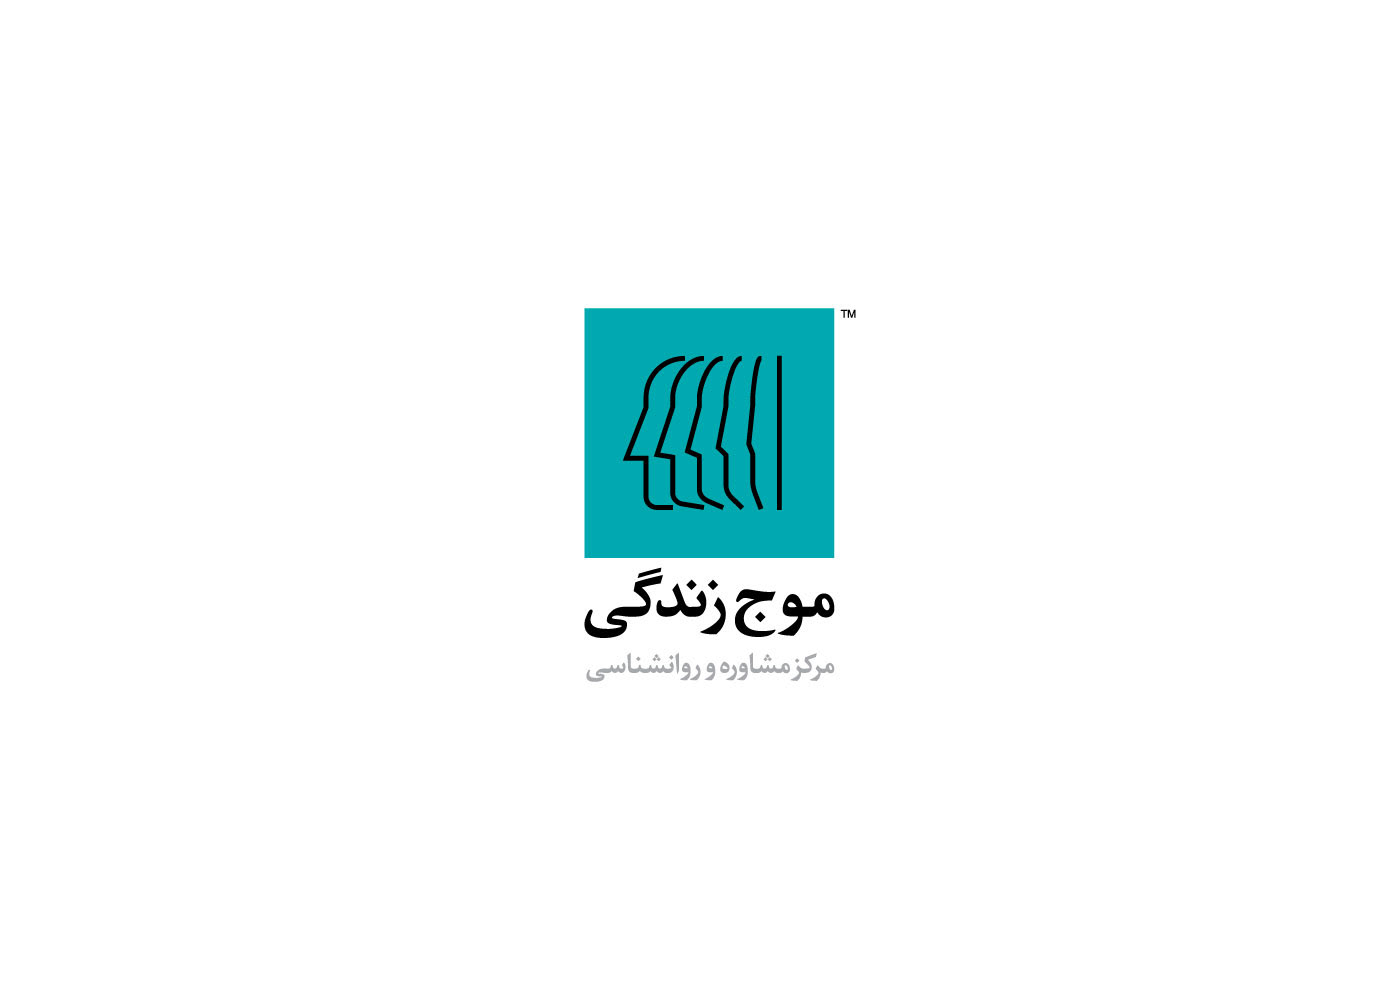 psychology brand identity logo persian Logo Design Graphic Designer identity brand visual identity